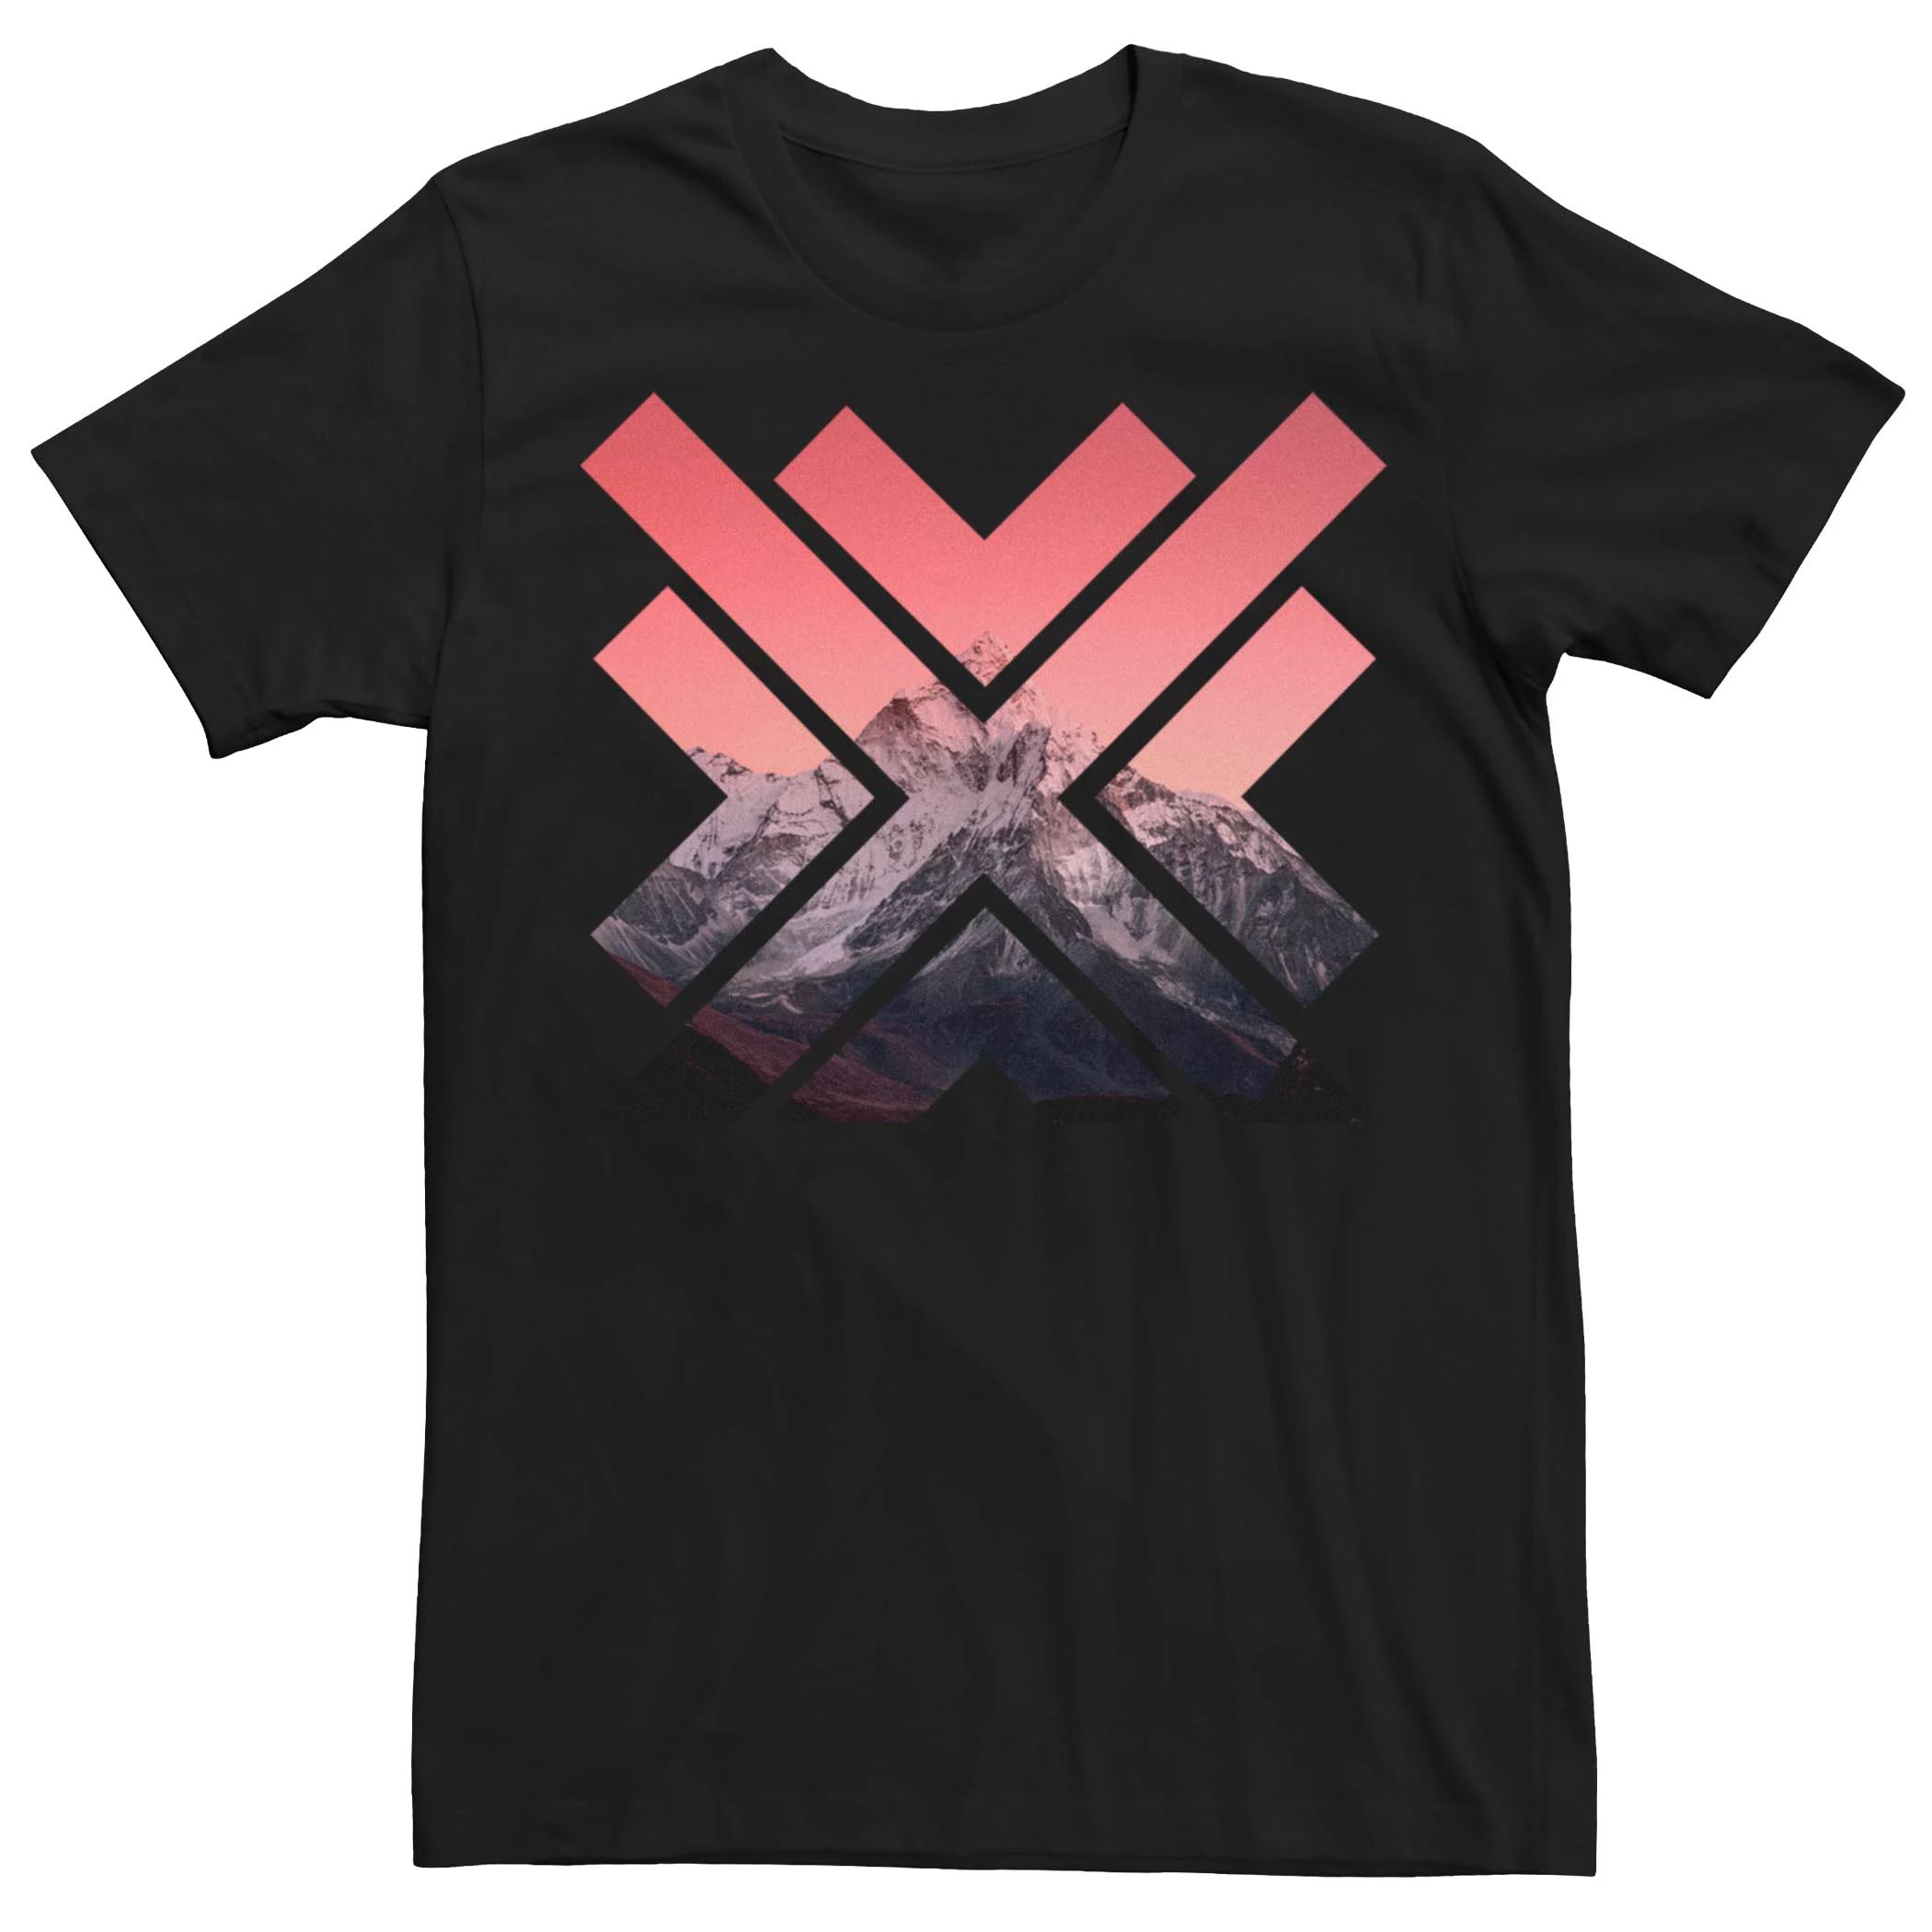 Мужская футболка с геометрическим рисунком гор и заката Fifth Sun